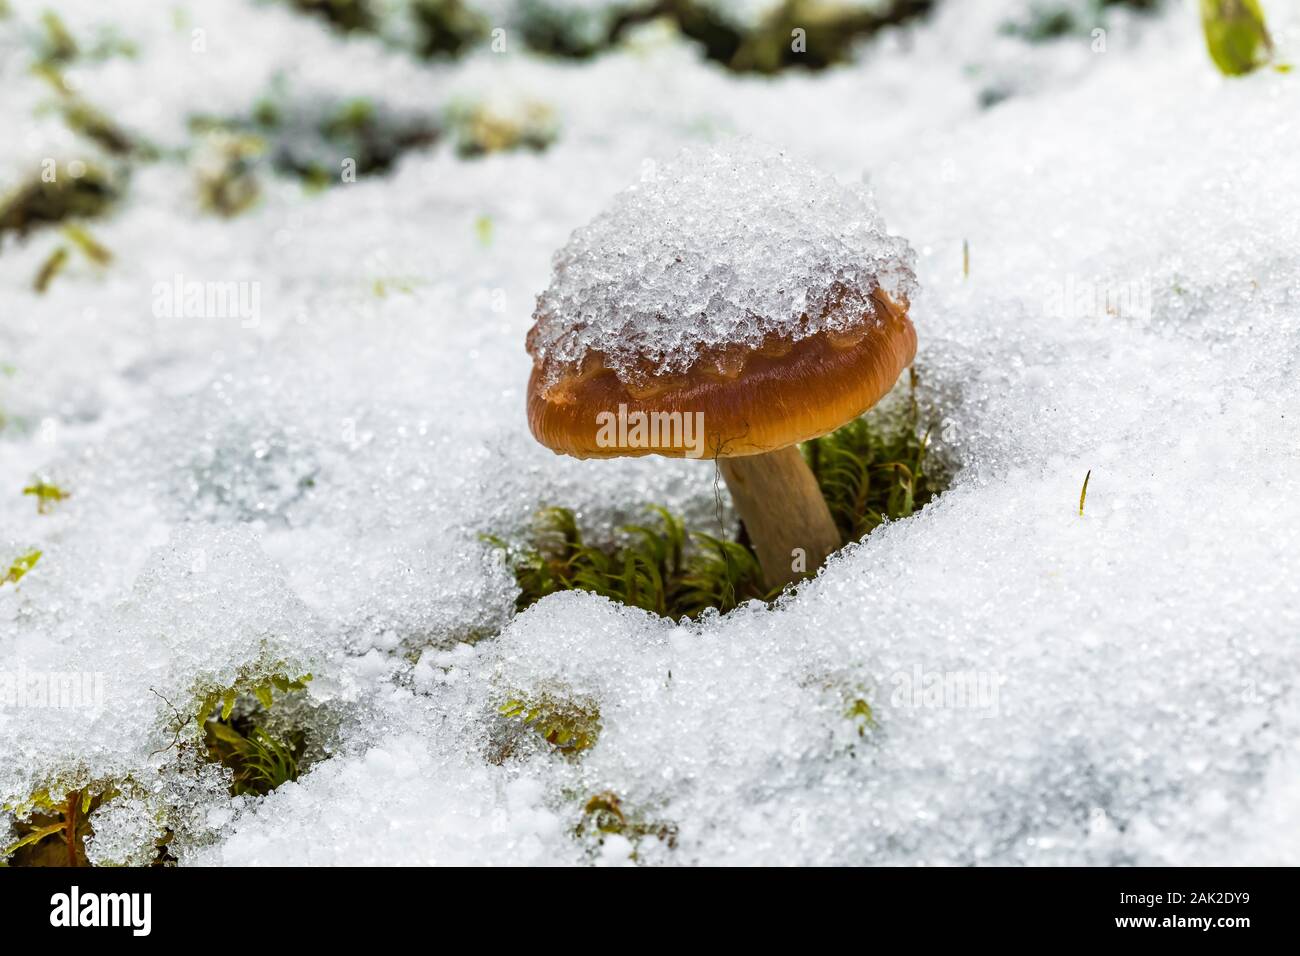 Dans la neige fraîche de champignons le long sentier à Linda Lake à partir du lac O'Hara en septembre dans le parc national Yoho, Colombie-Britannique, Canada Banque D'Images